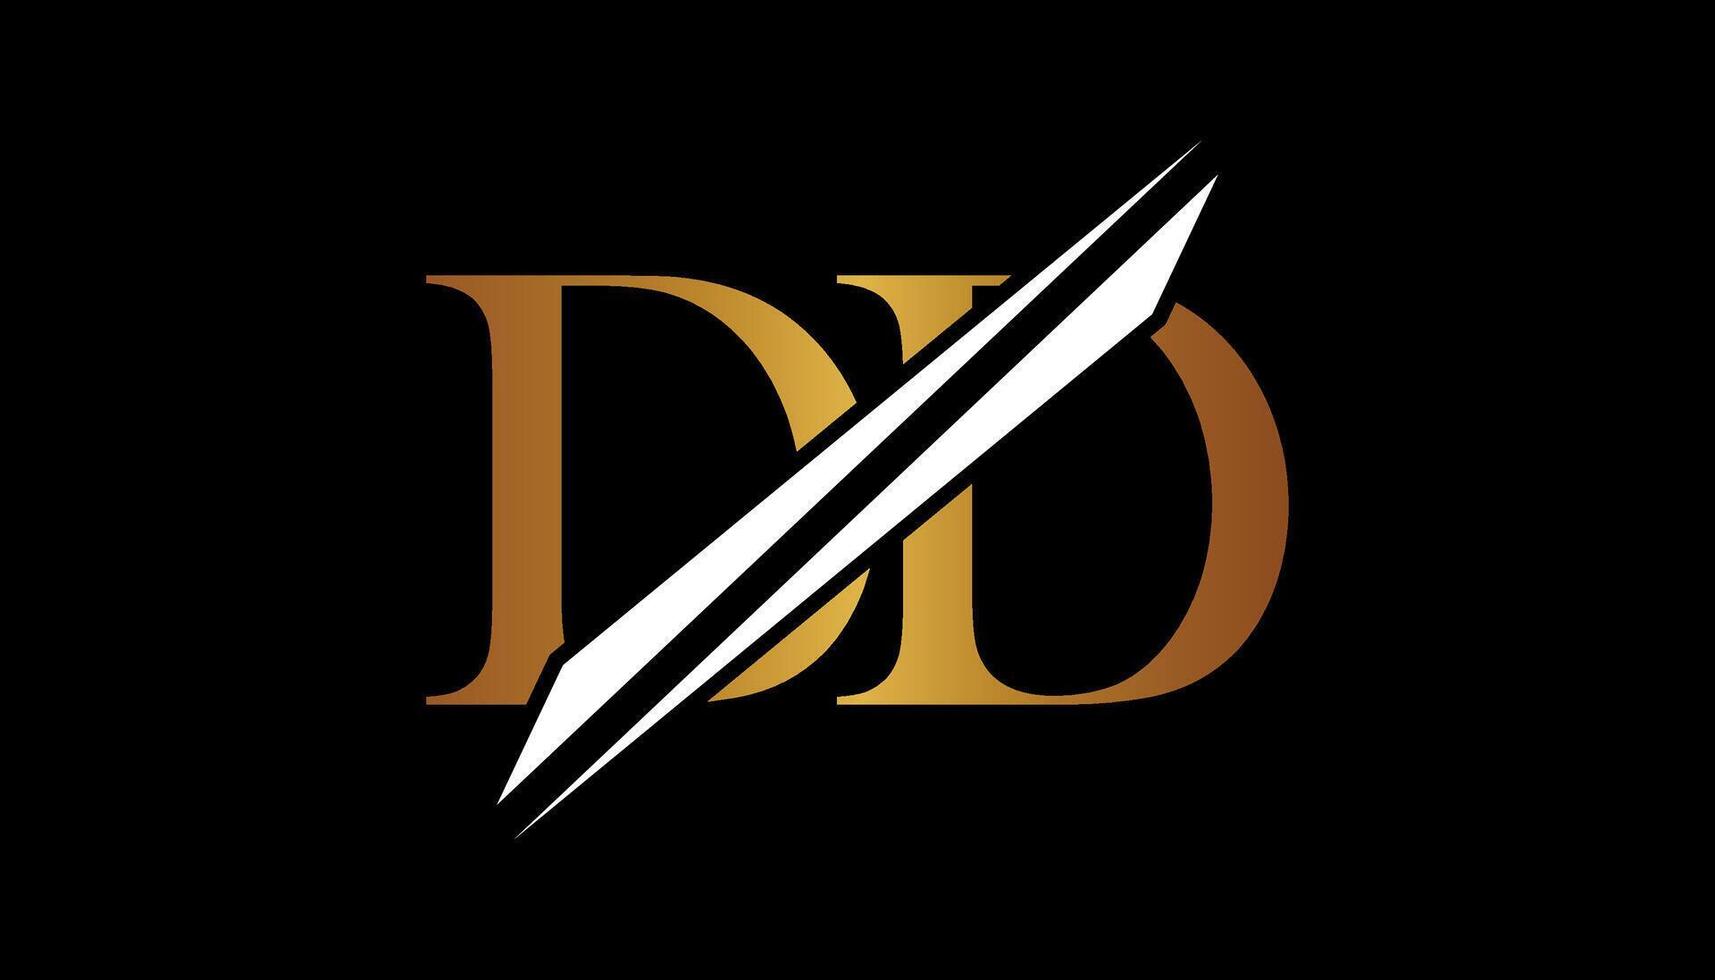 DD letter logo design template elements. DD letter logo design. vector